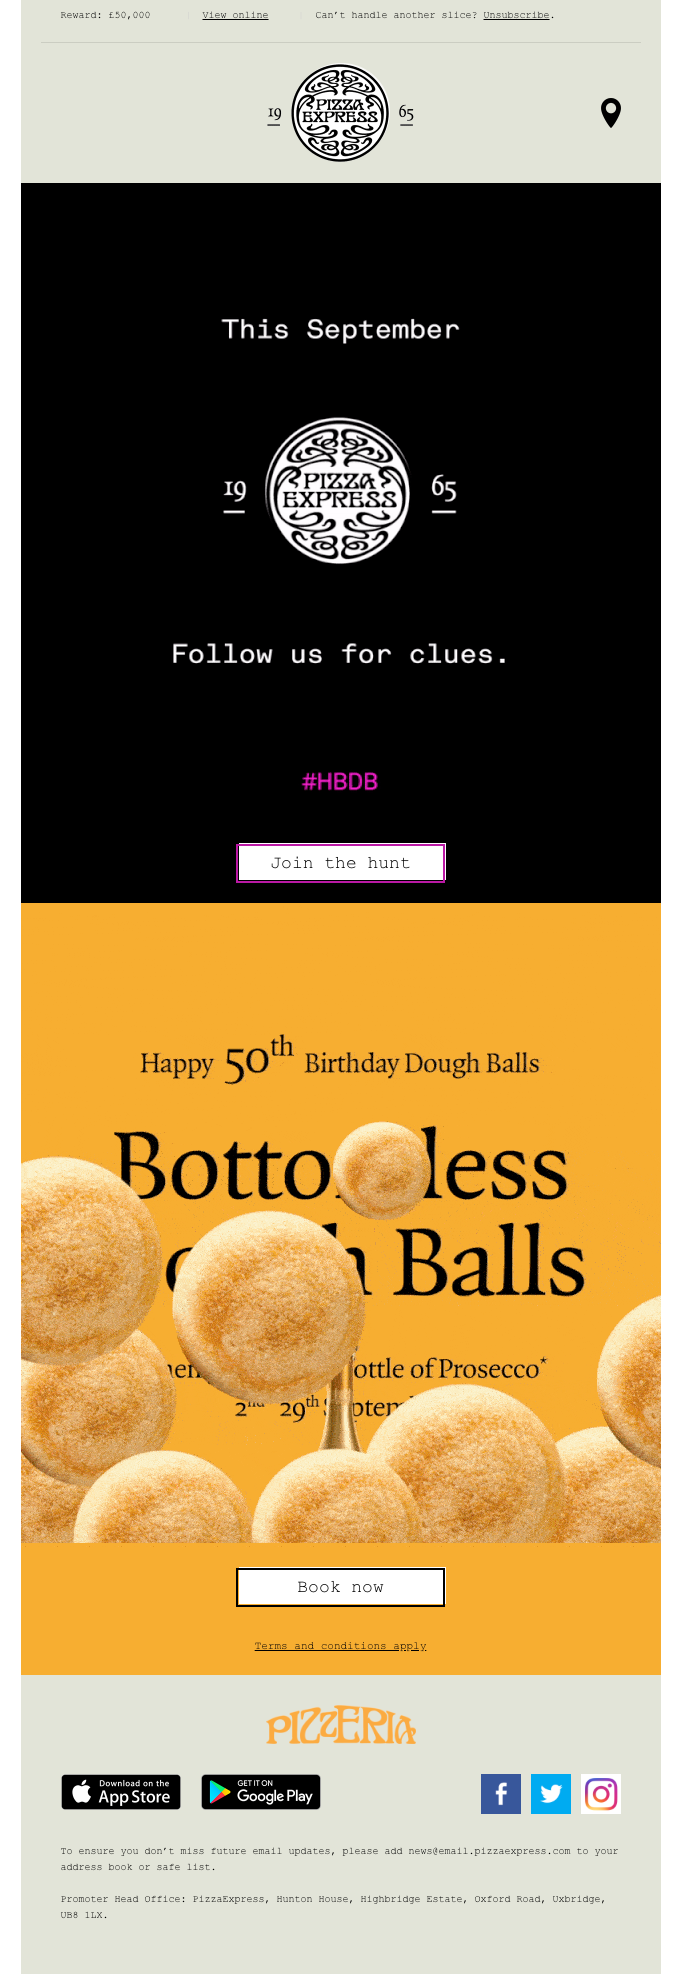 WANTED: Golden Dough Balls